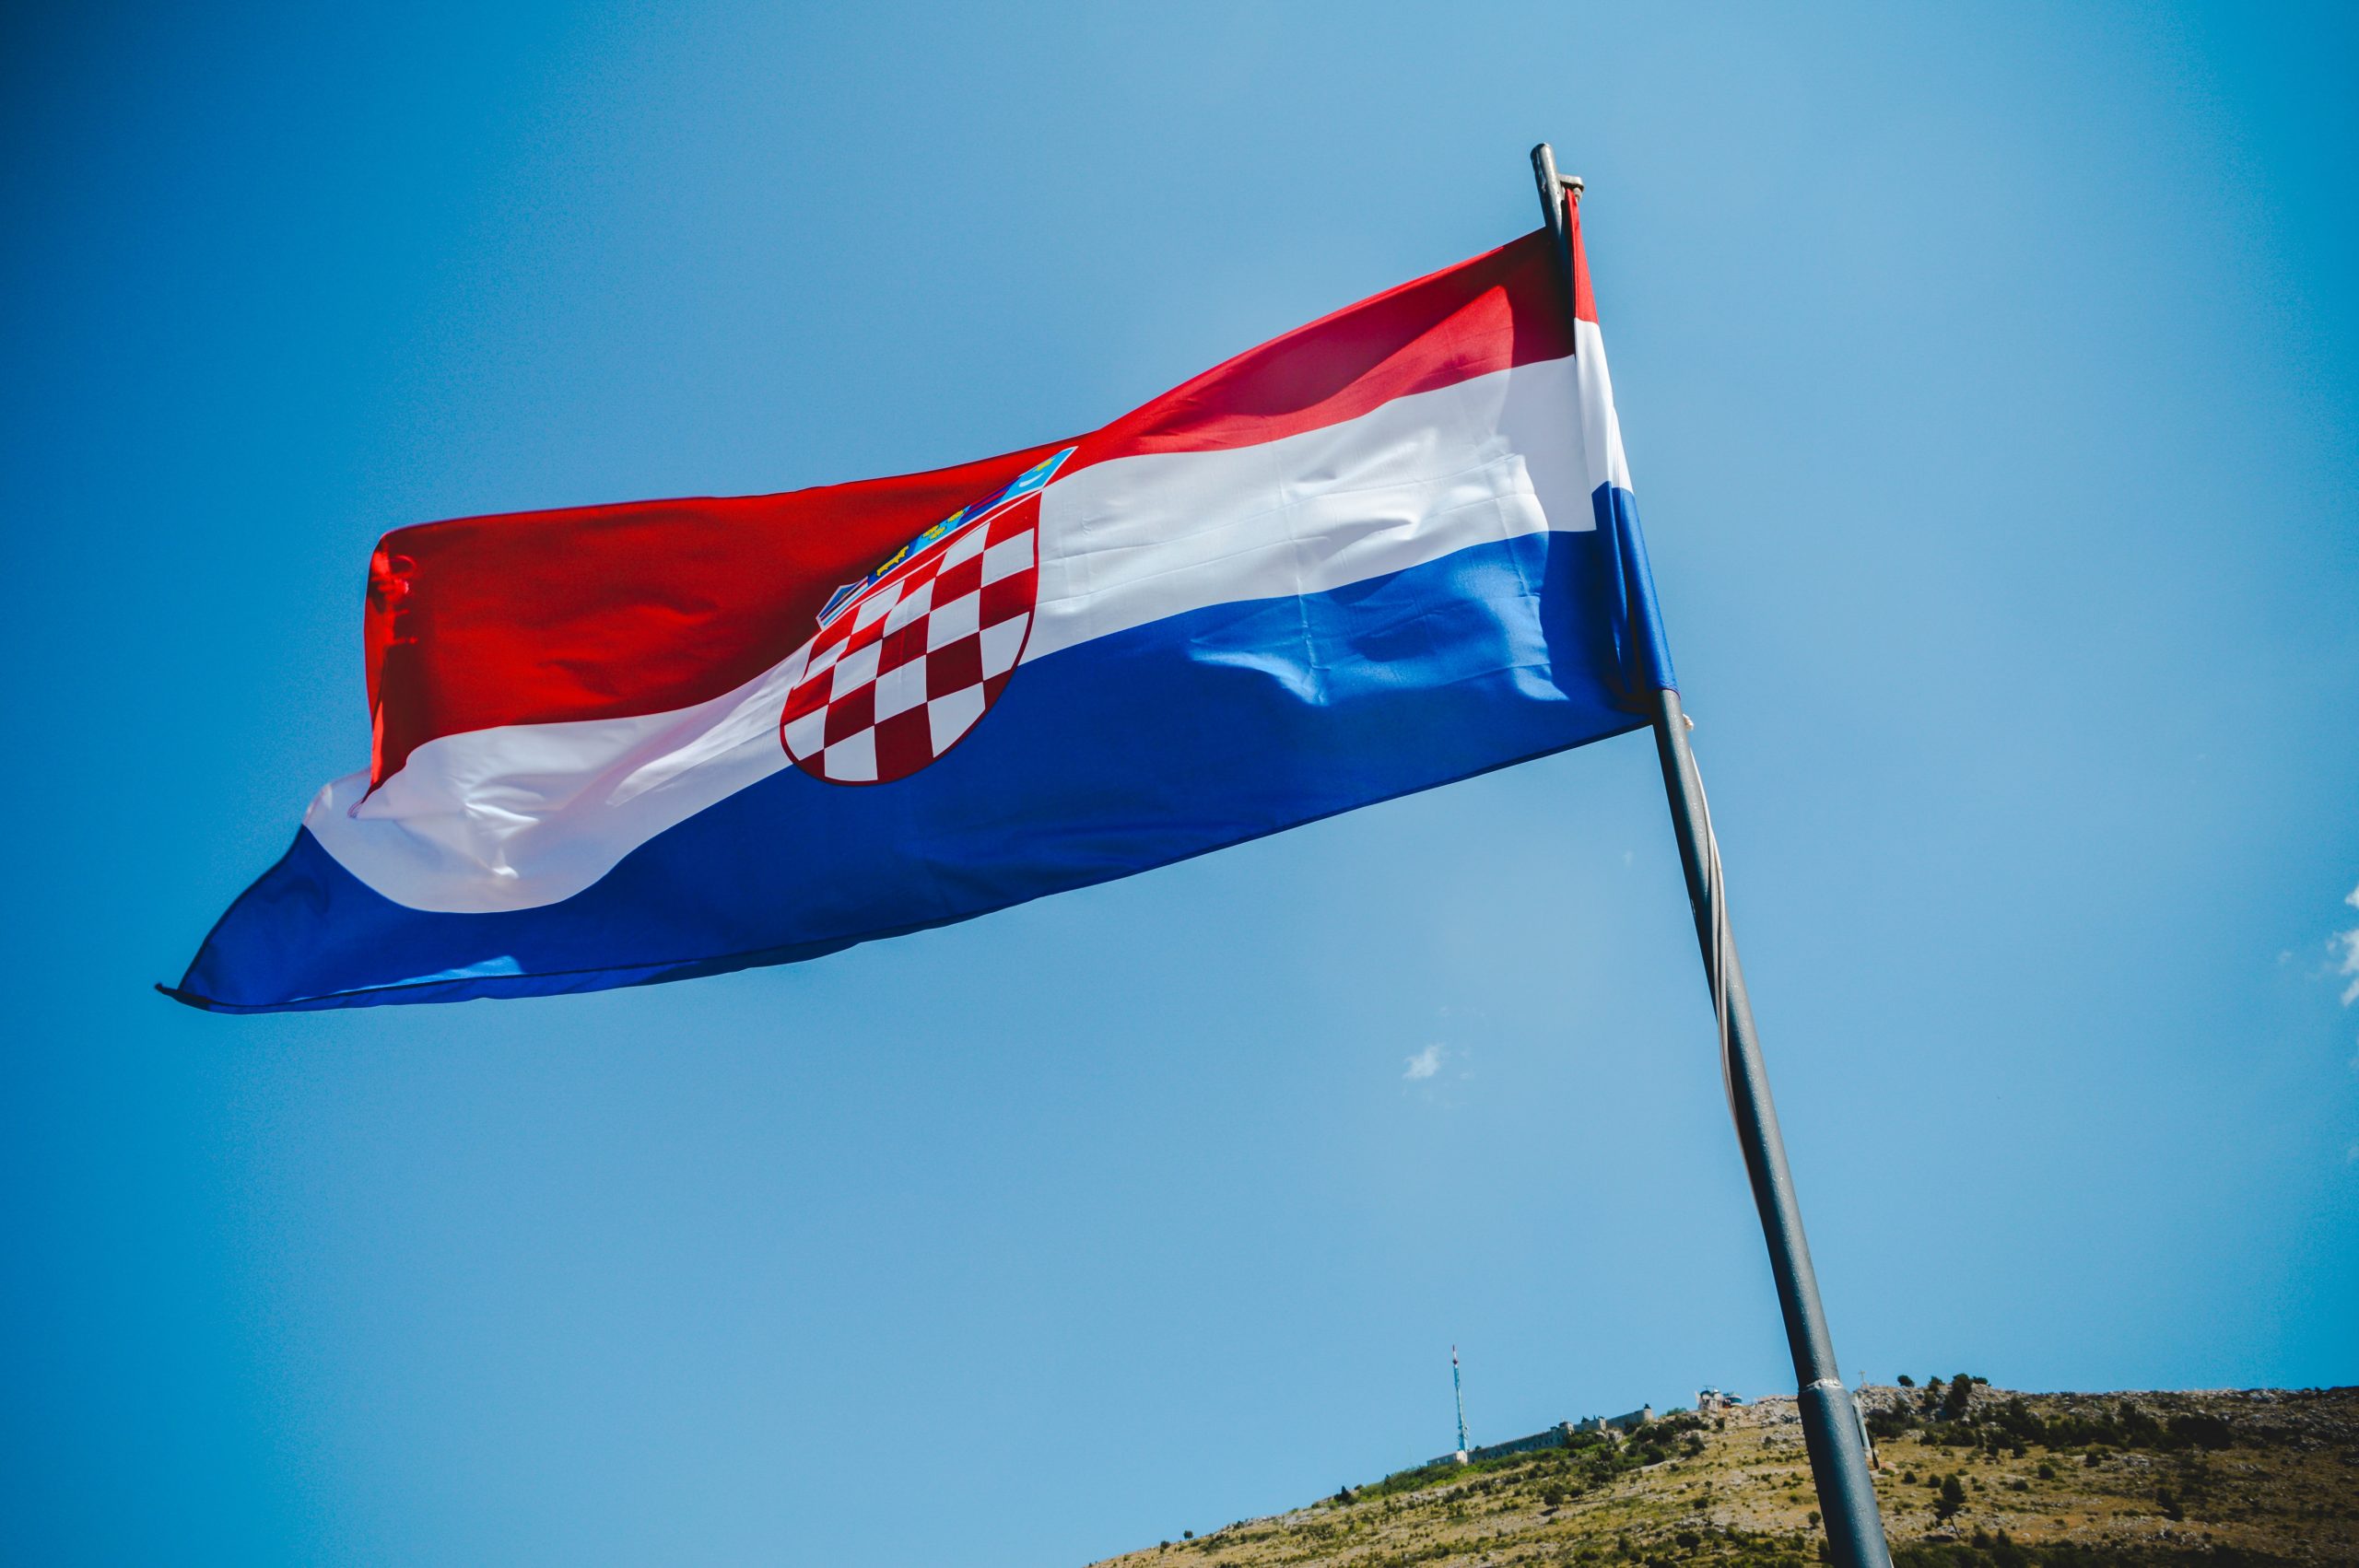 croatian gdp growth